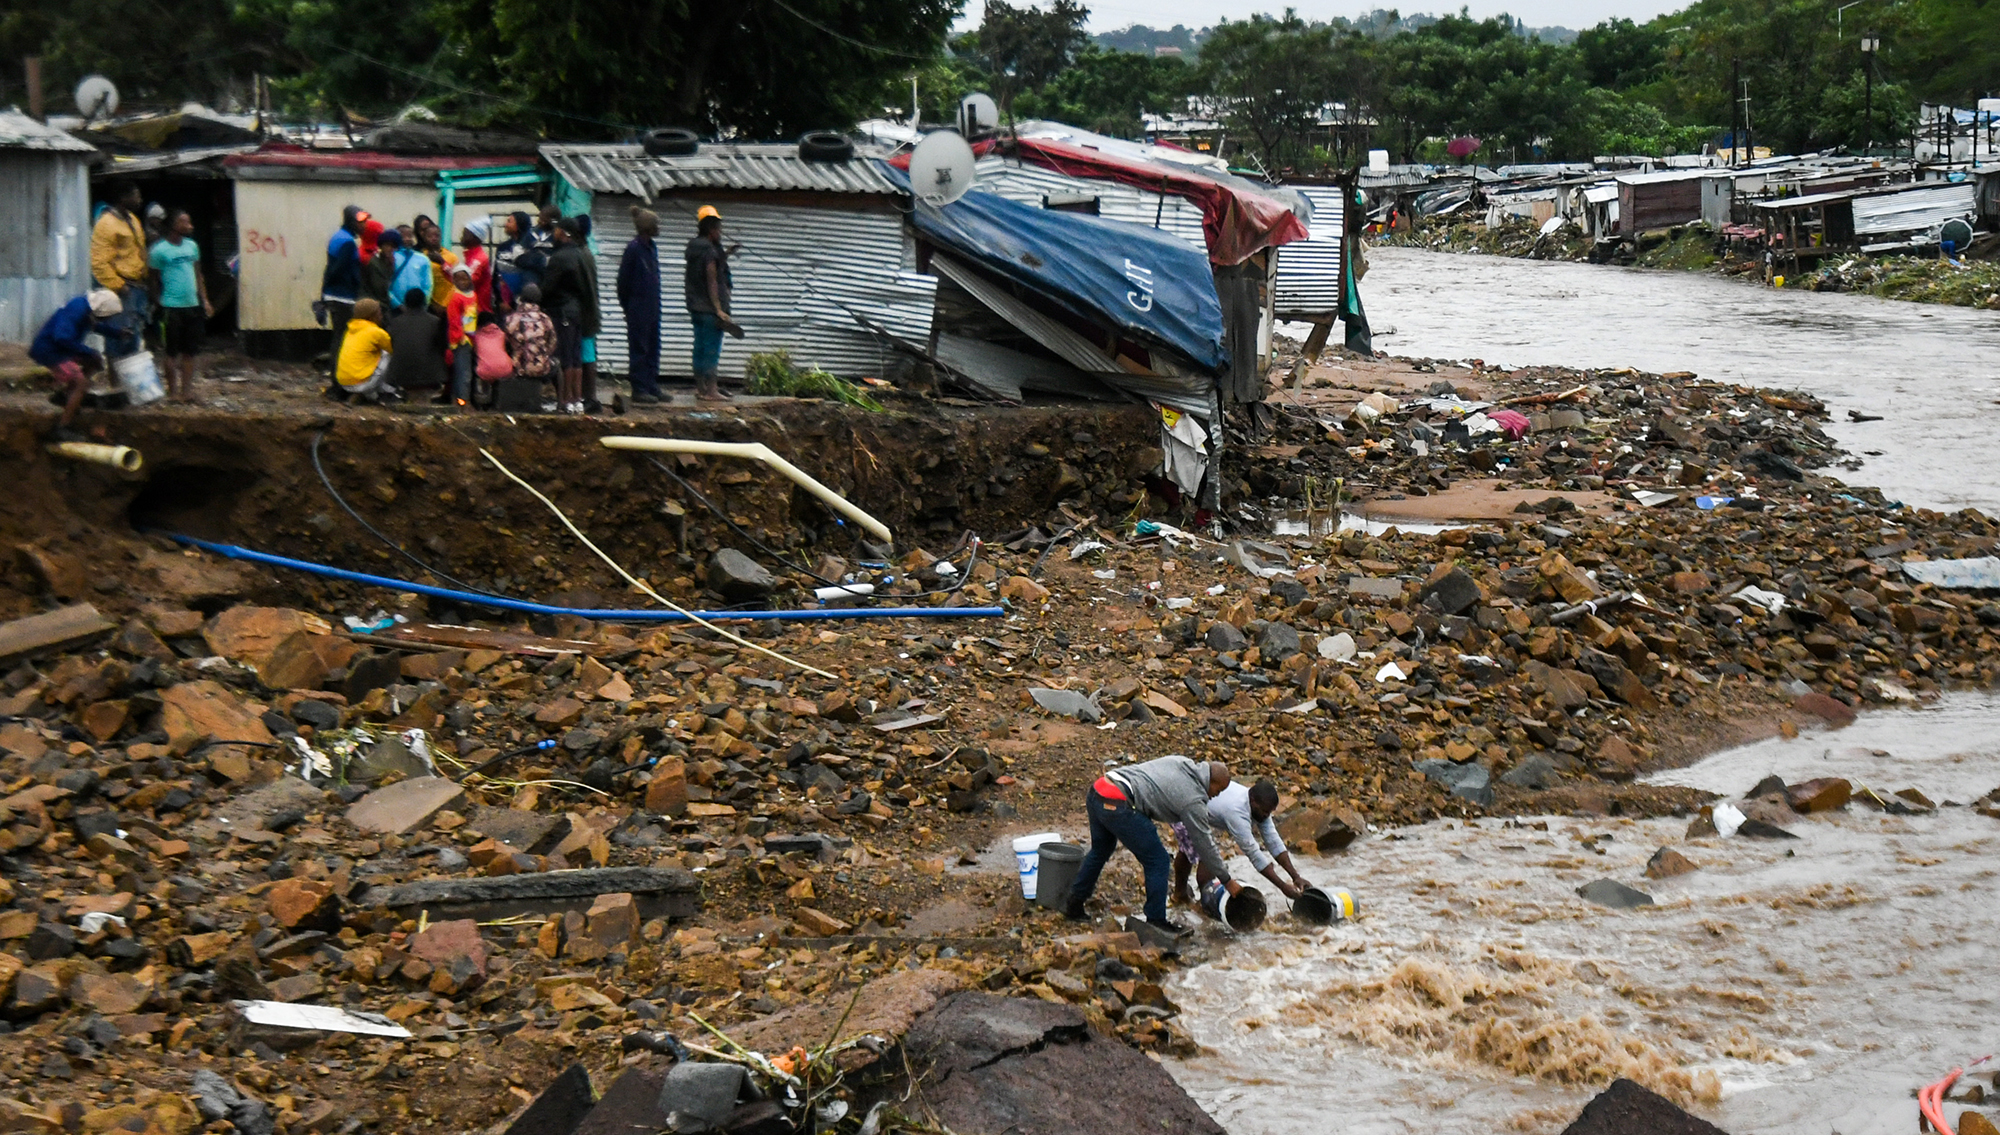 kzn floods devastated communities durban